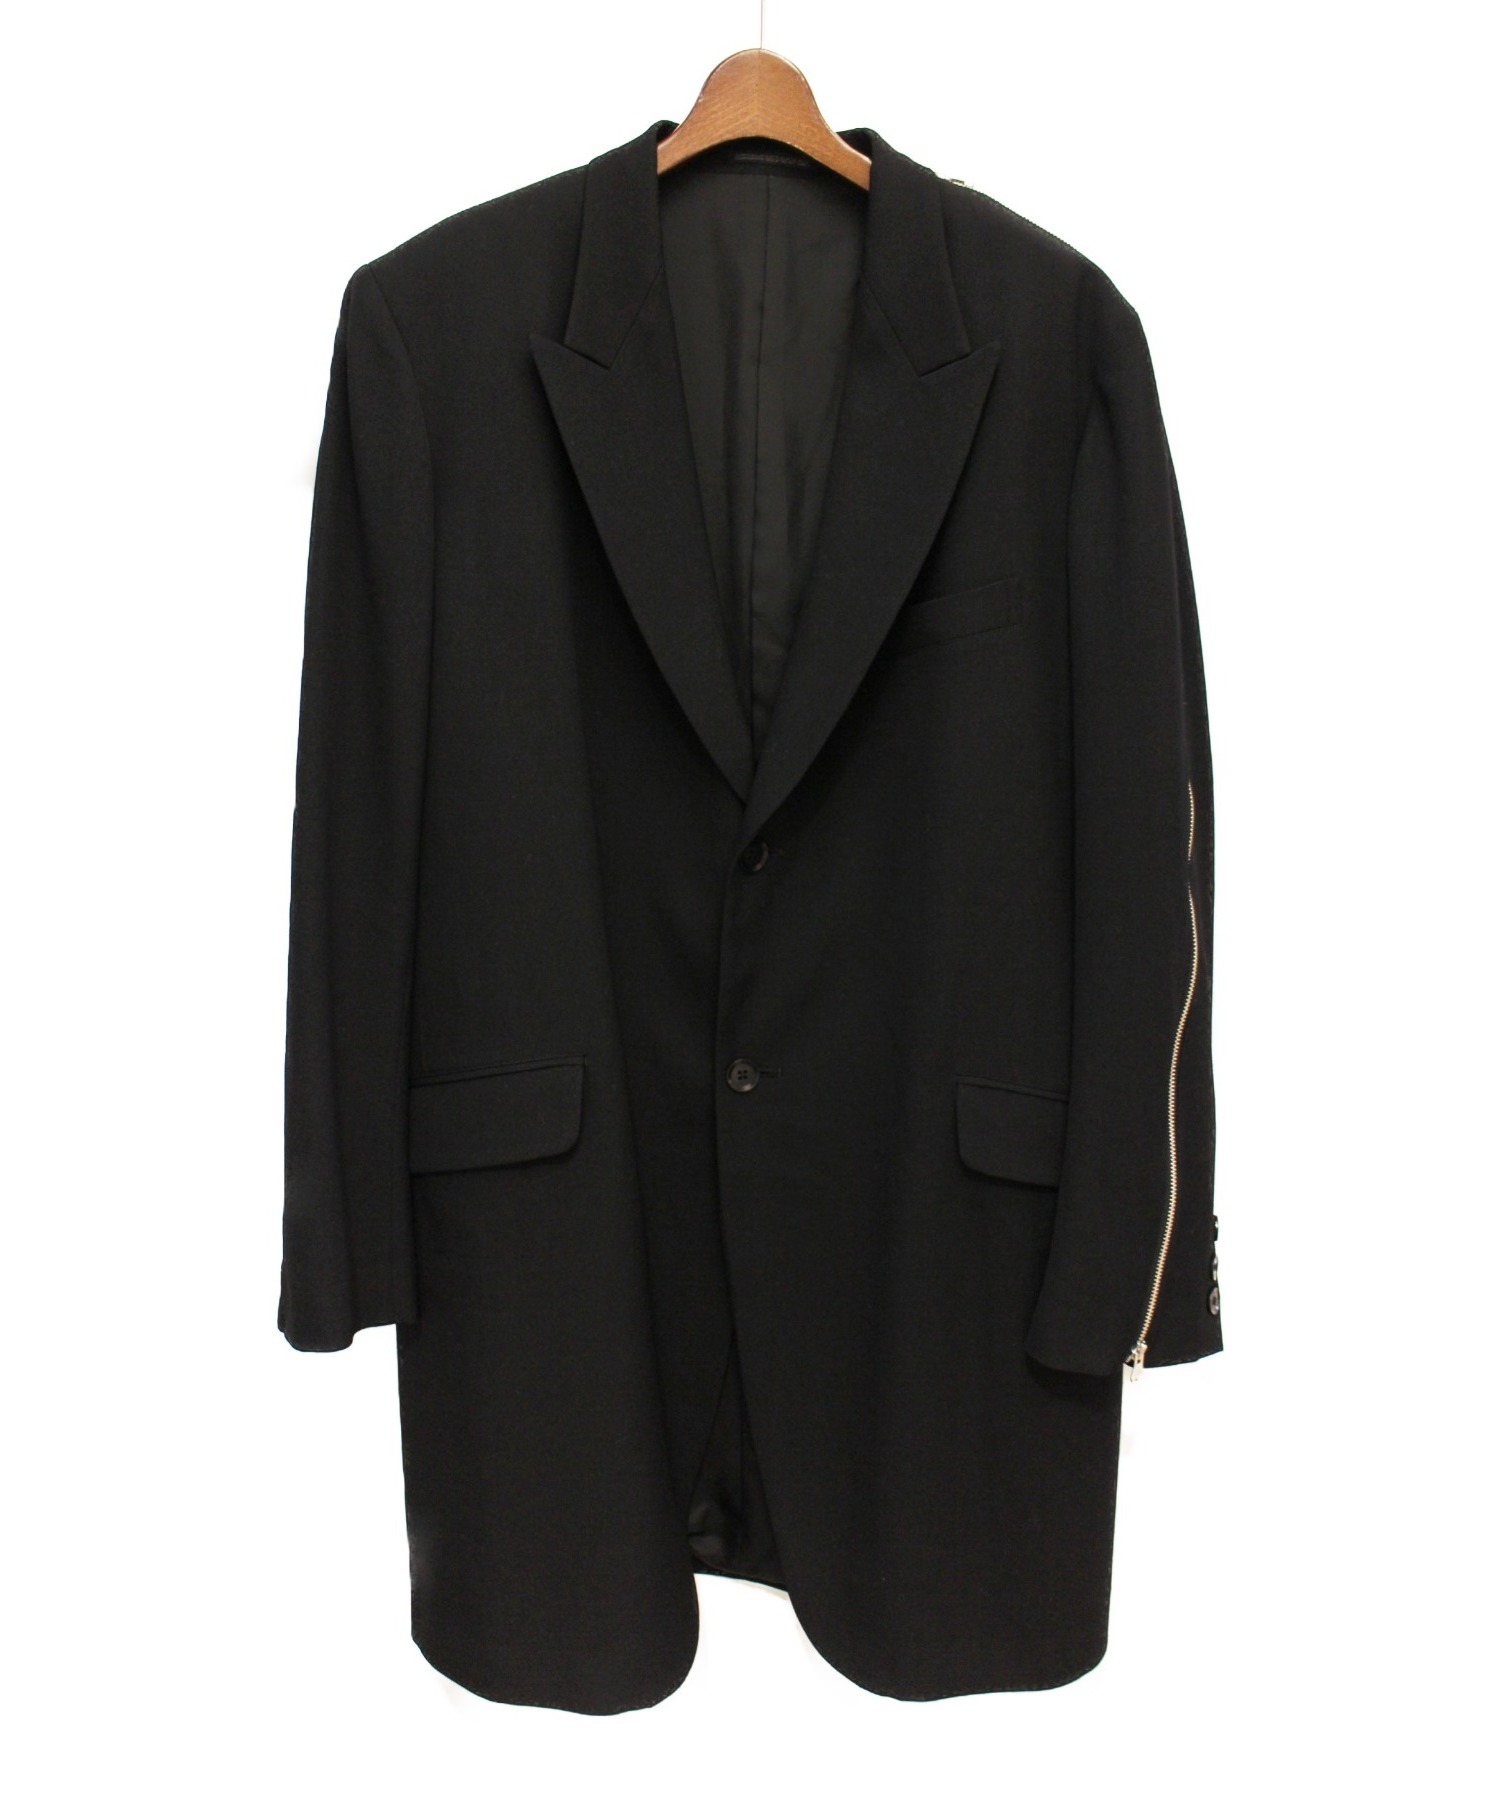 Yohji Yamamoto pour homme (ヨウジヤマモトプールオム) ジップデザインロングジャケット ブラック サイズ:4